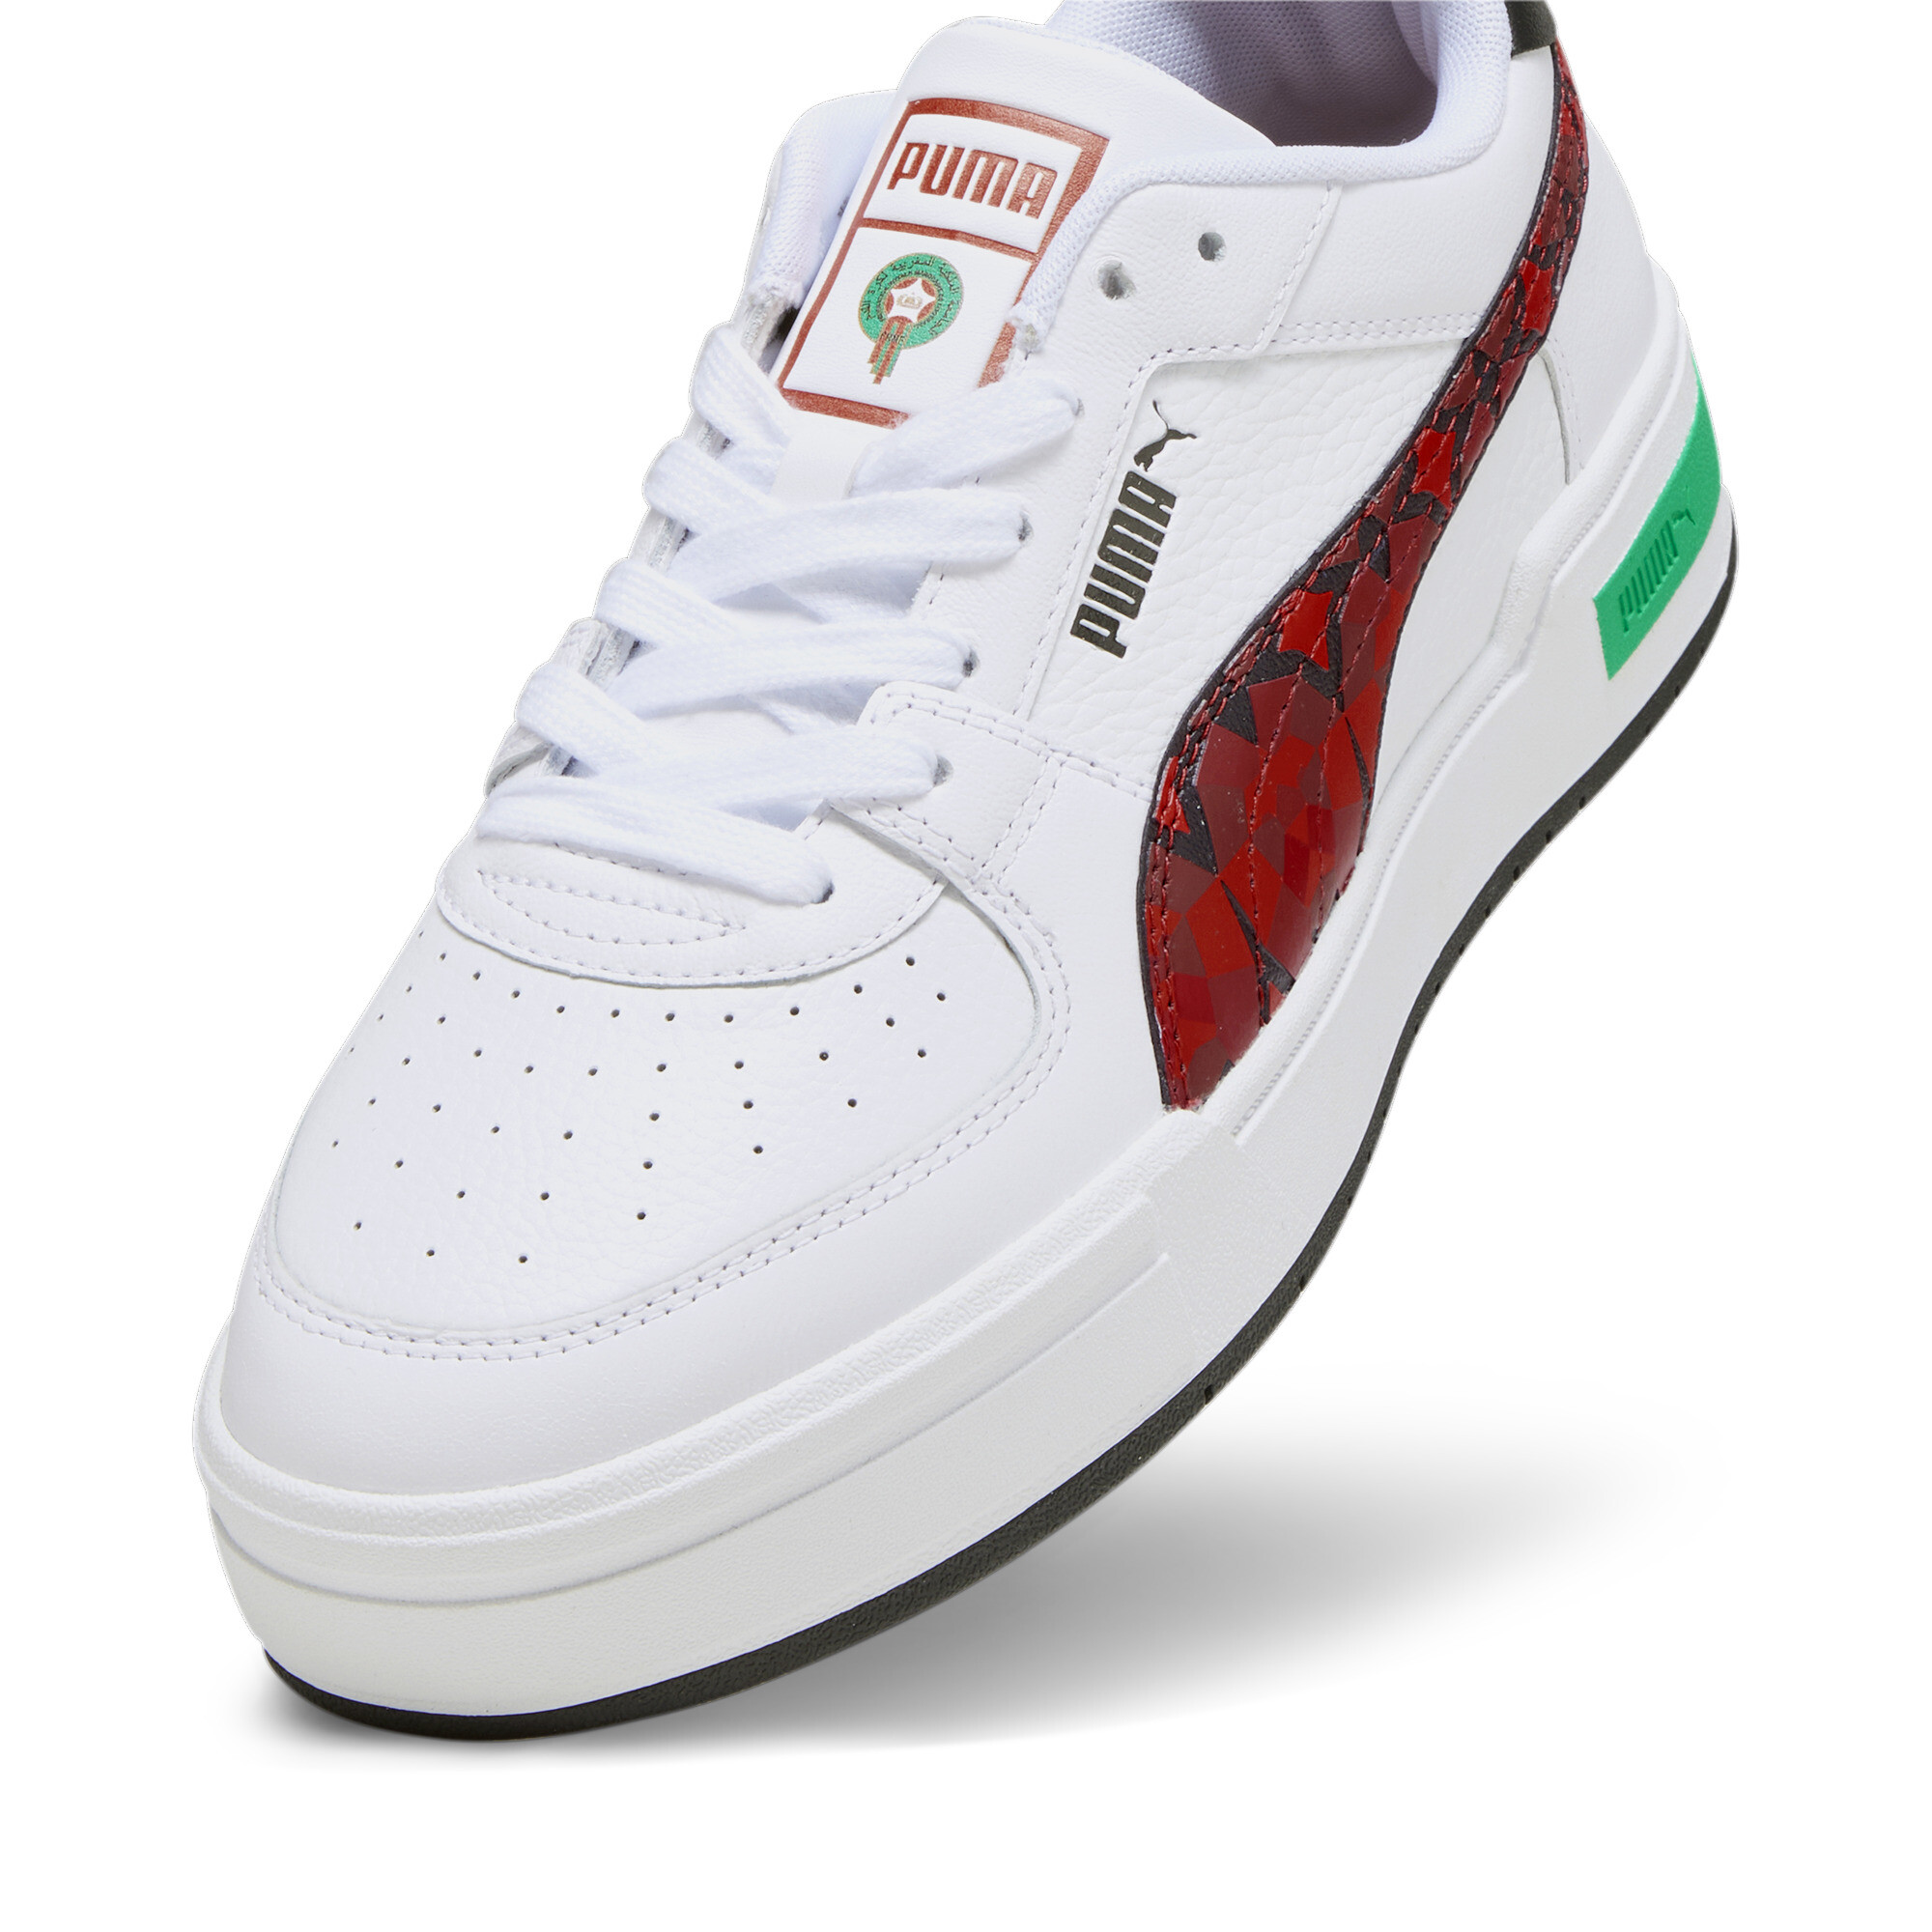 Men's PUMA CA Pro Morocco Football Sneakers In White, Size EU 43